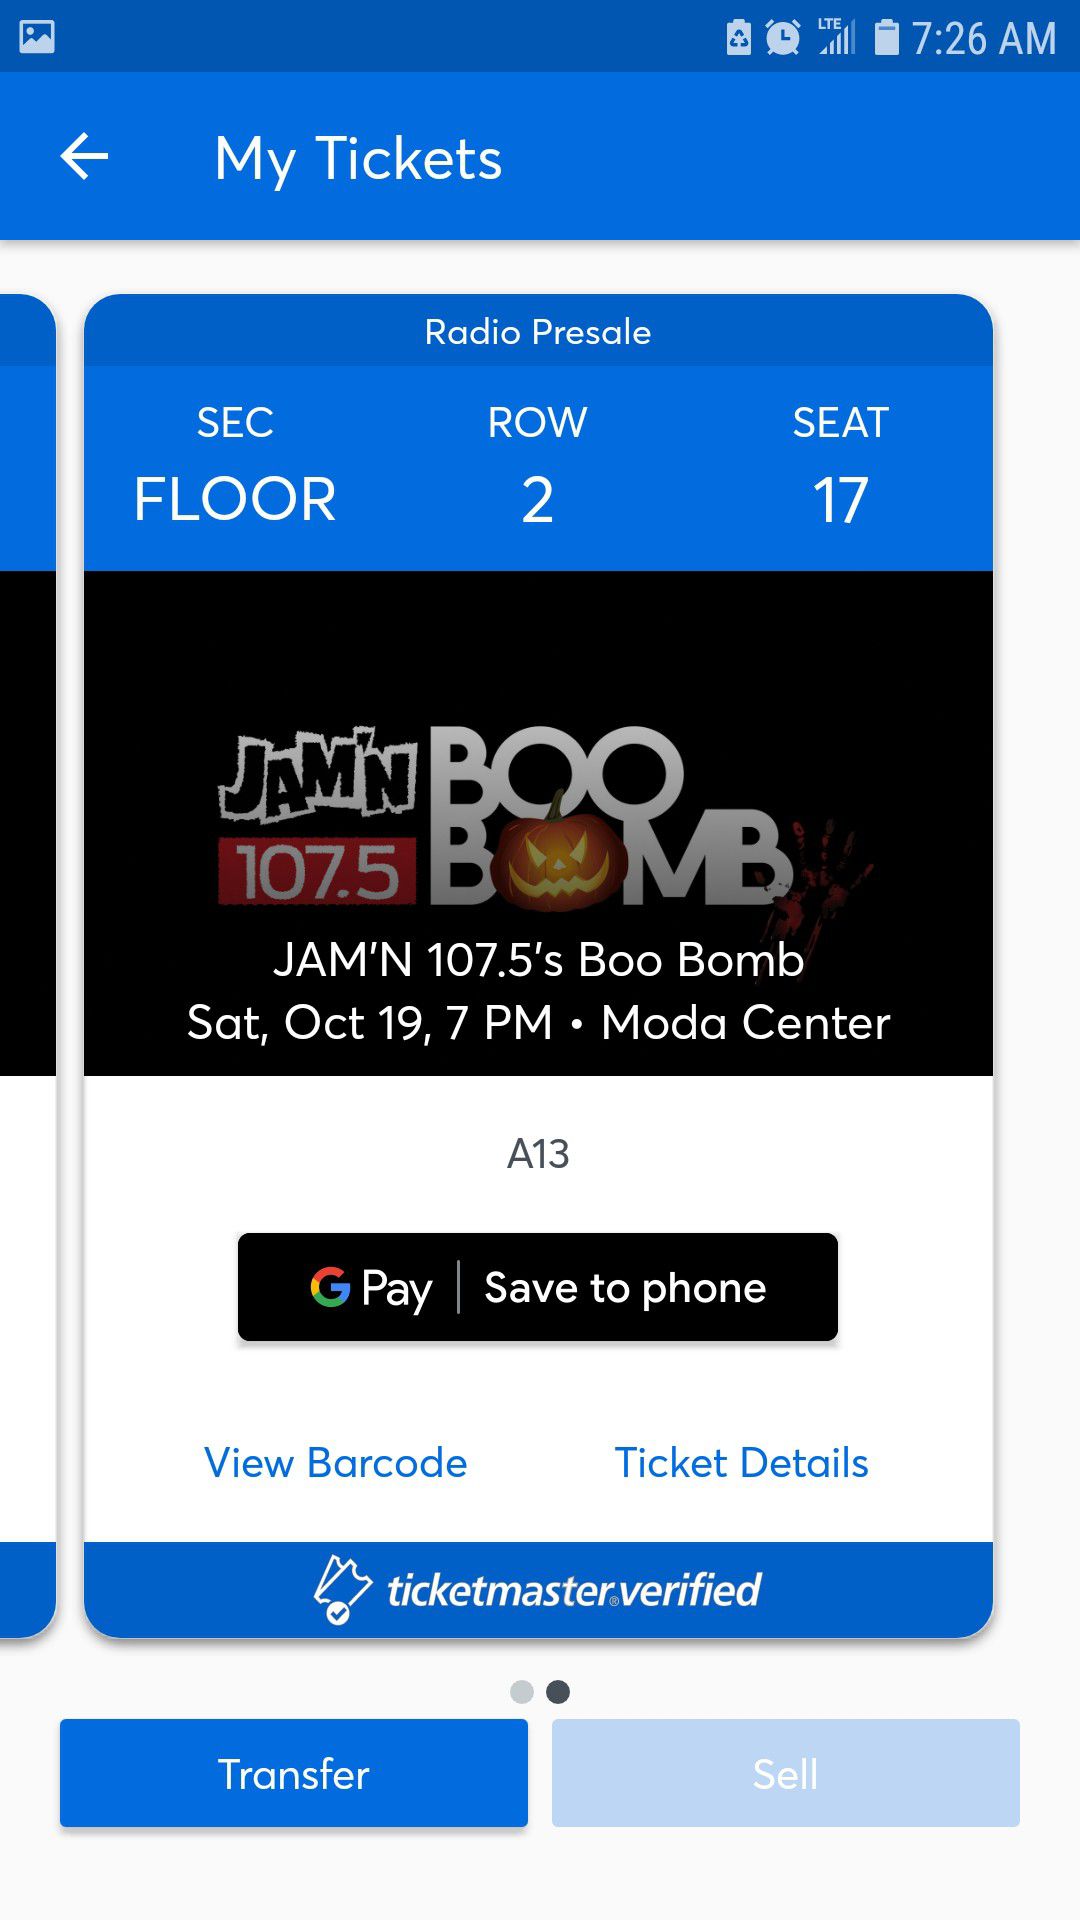 Boo bomb tickets